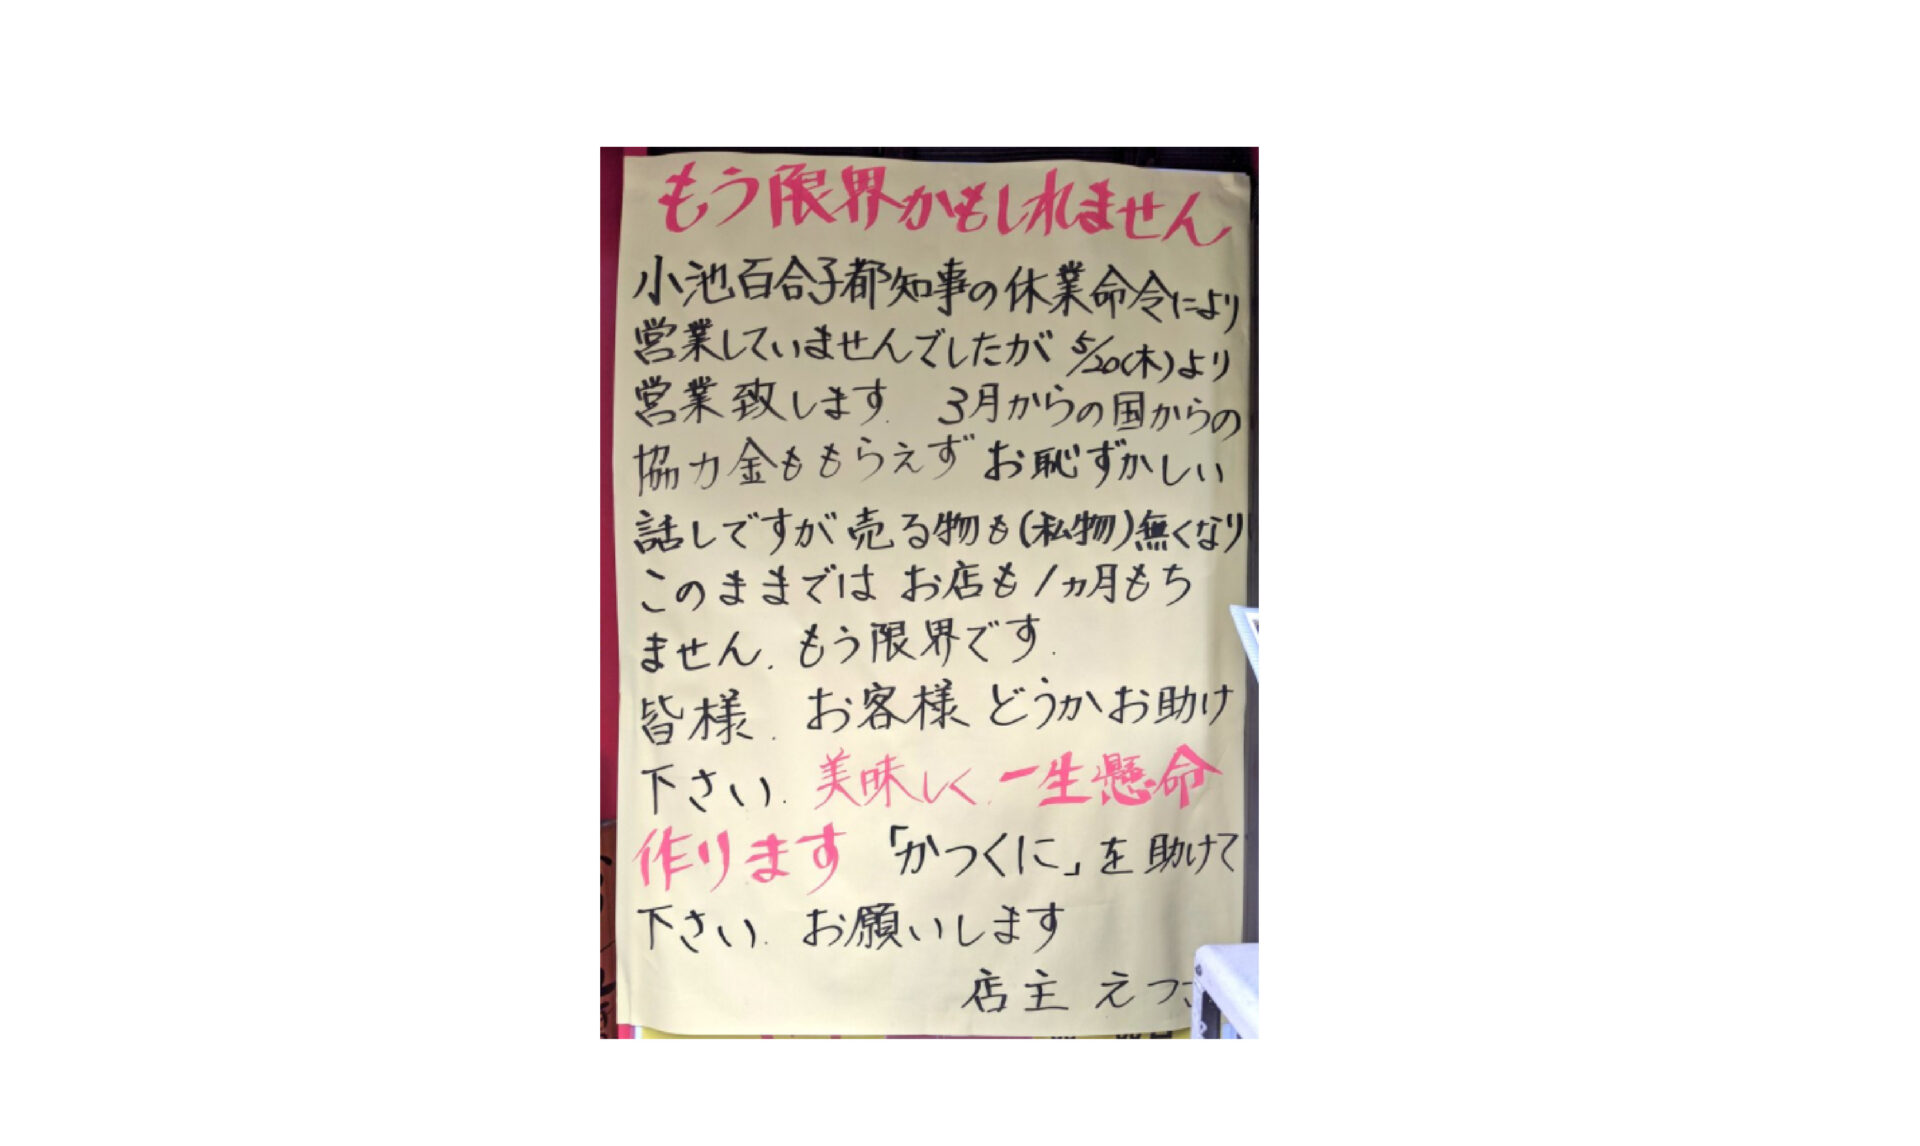 「もう限界、助けてください」東京荻窪の女性ラーメン店主の悲痛な叫びが涙を誘い疑問も出る